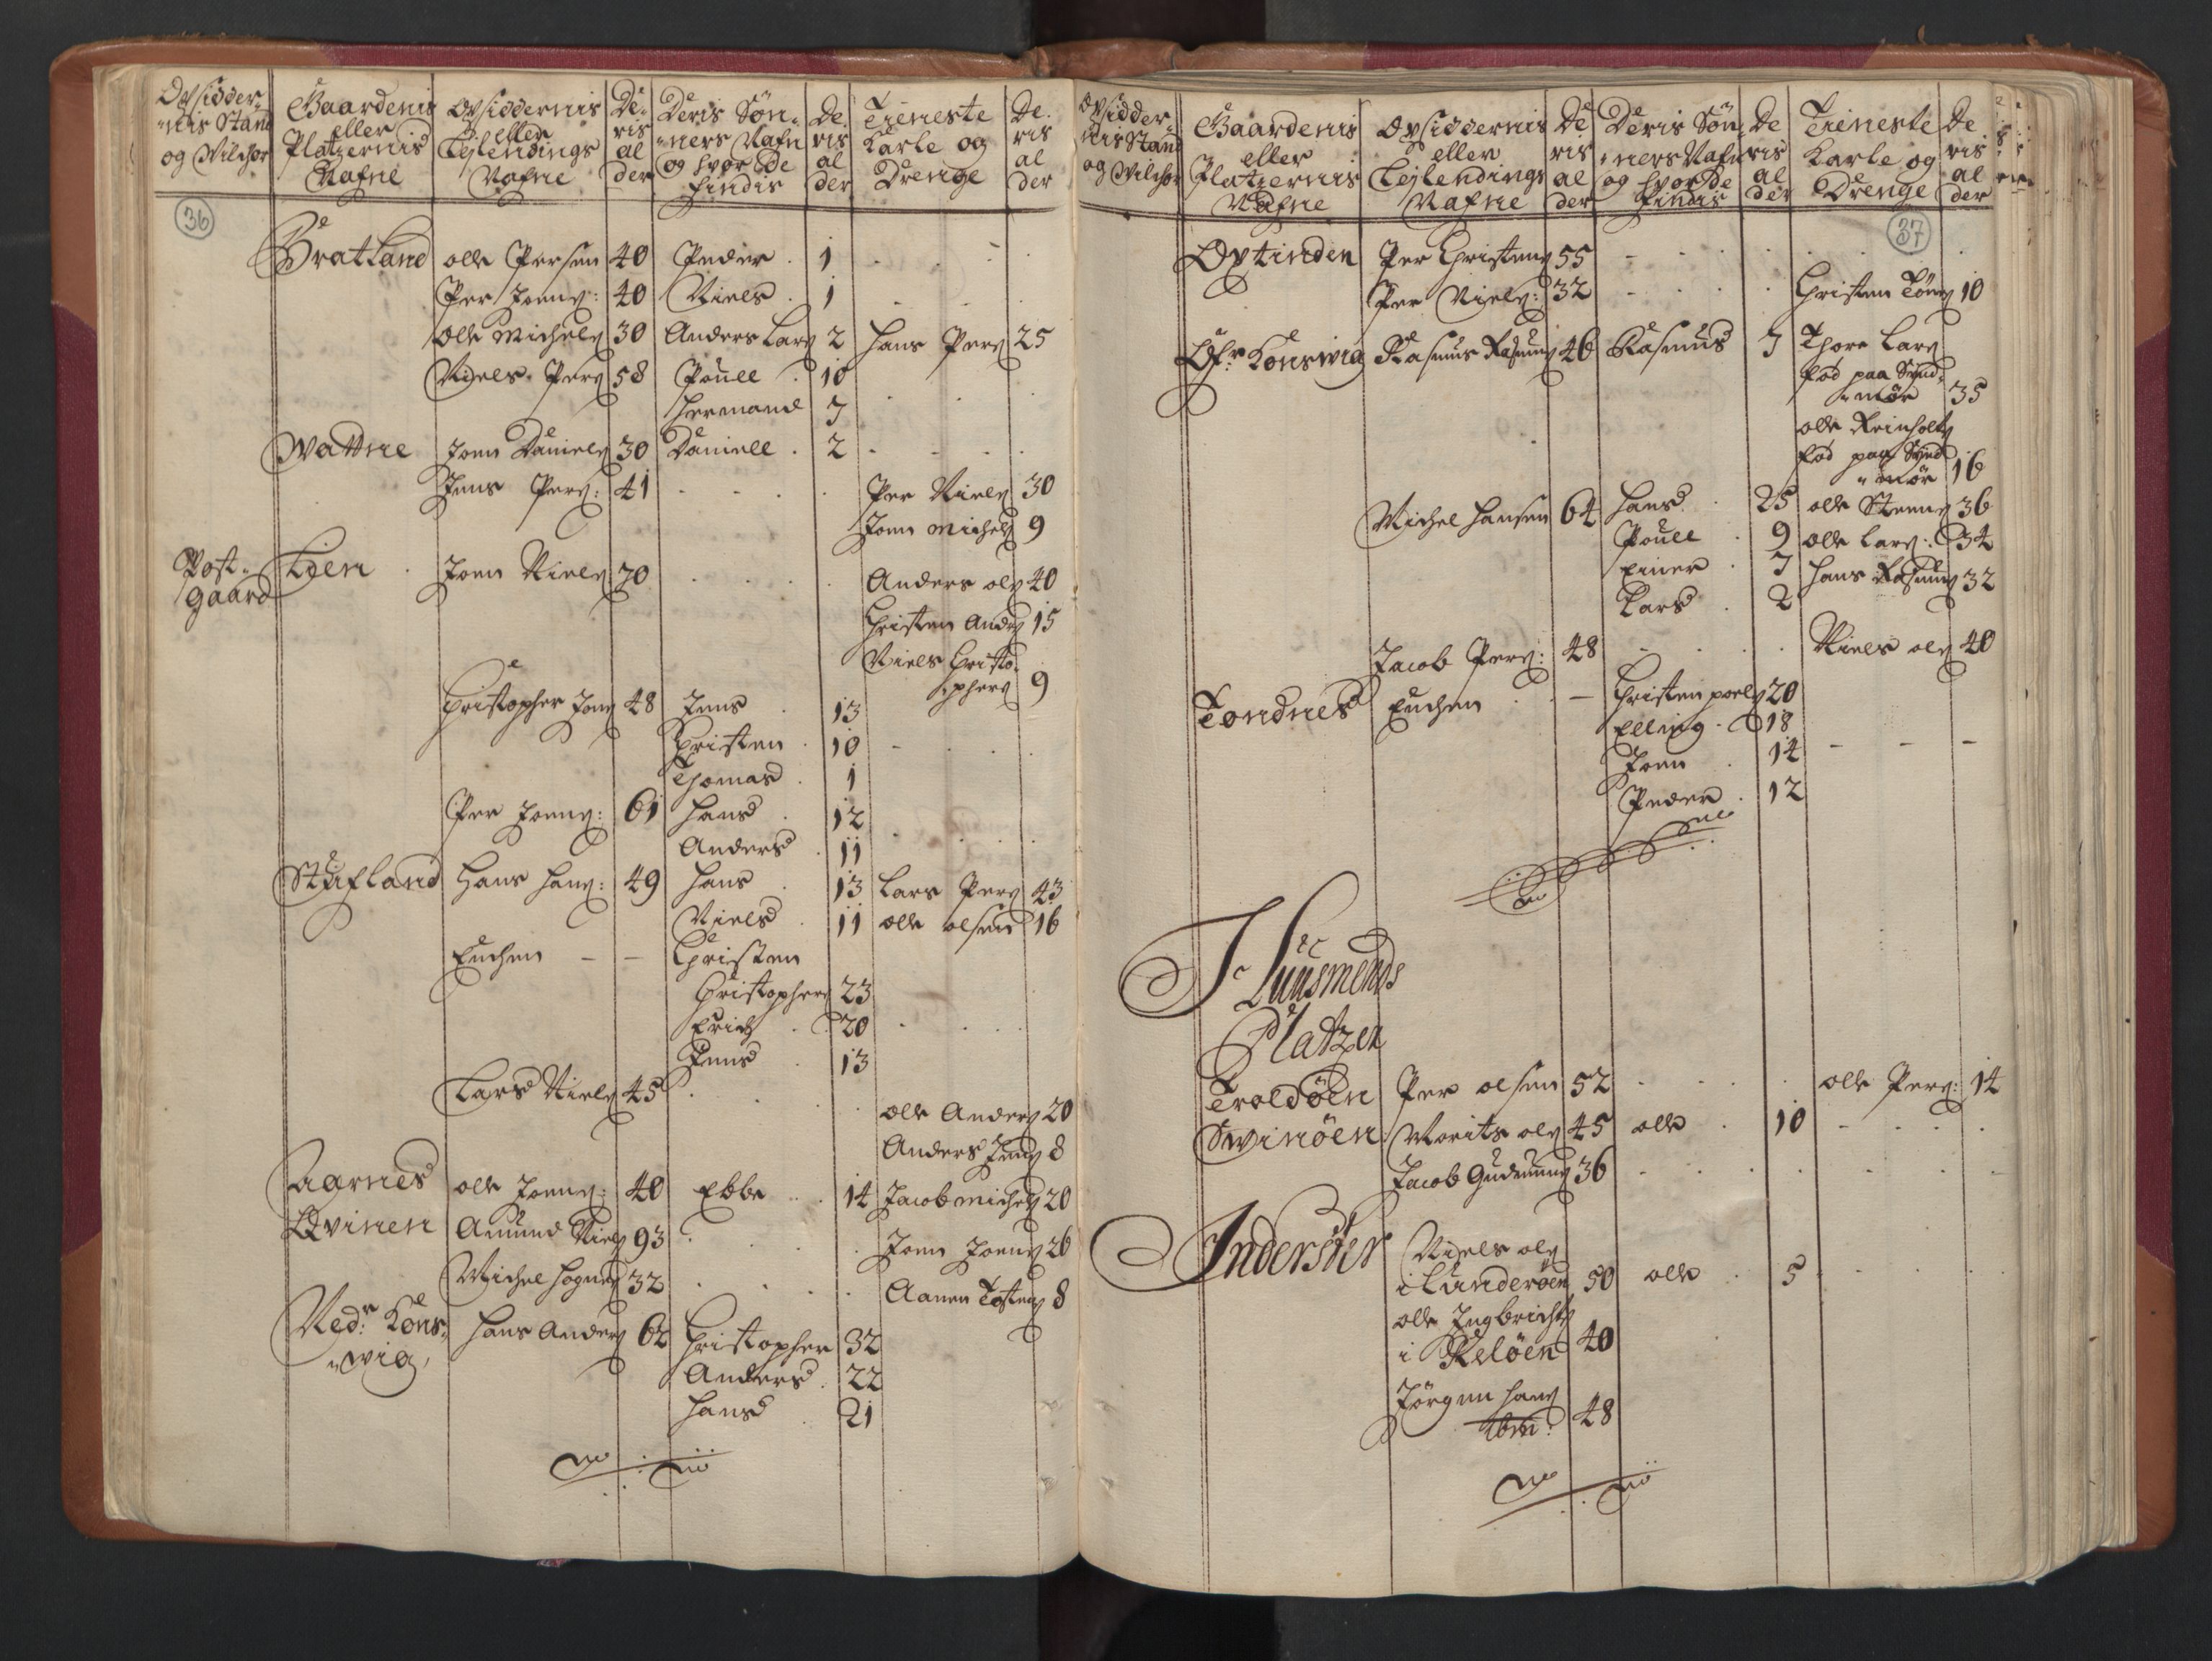 RA, Manntallet 1701, nr. 16: Helgeland fogderi, 1701, s. 36-37